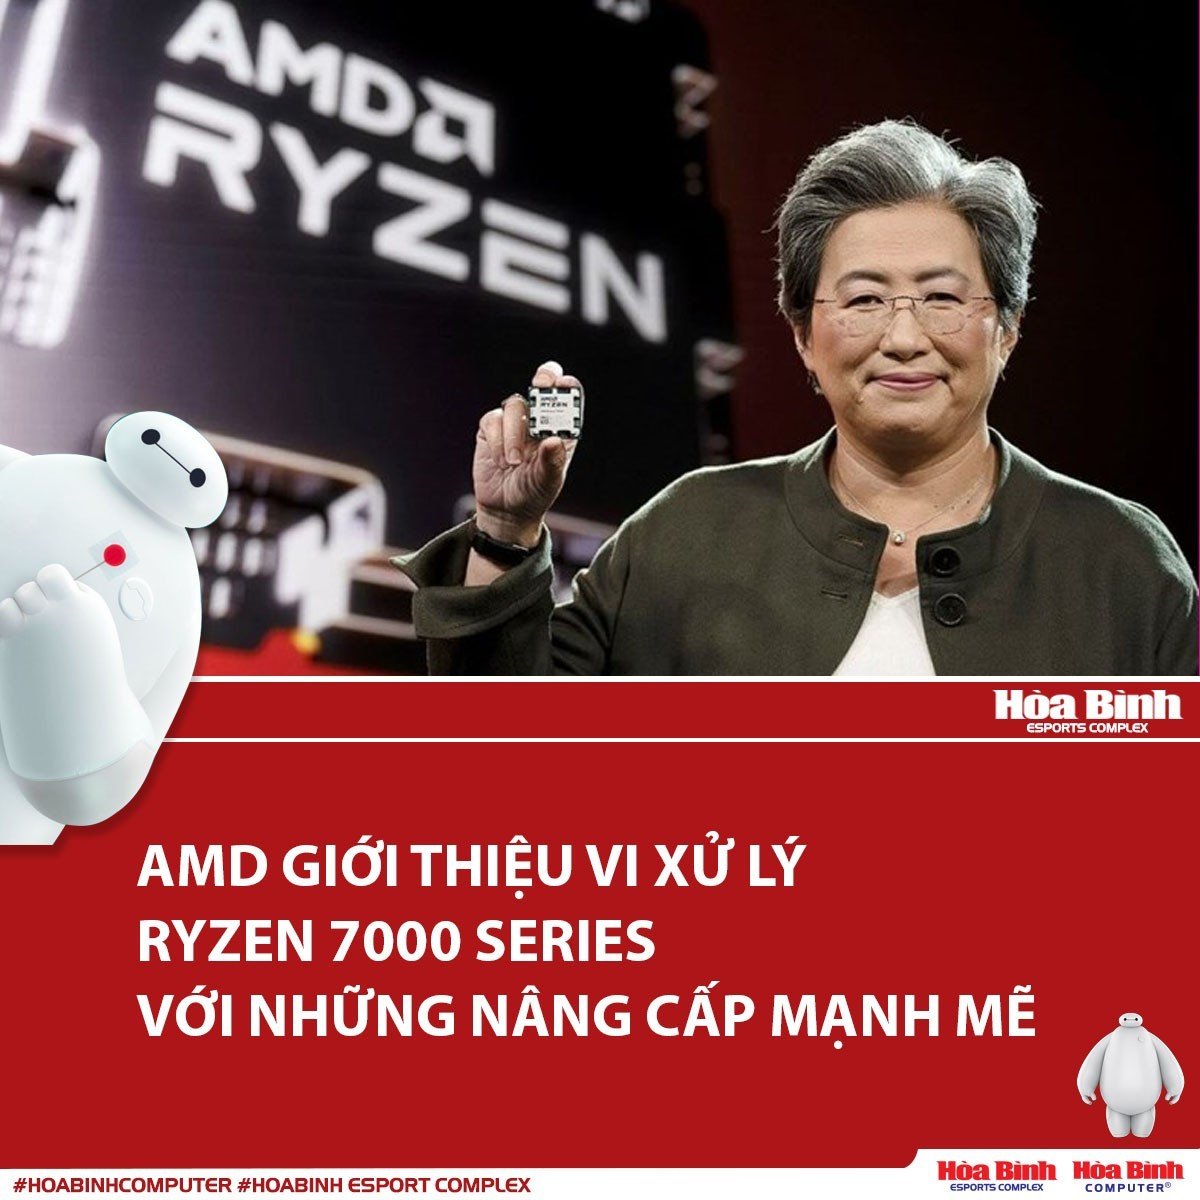 AMD giới thiệu vi xử lý Ryzen 7000 Series với những nâng cấp mạnh mẽ